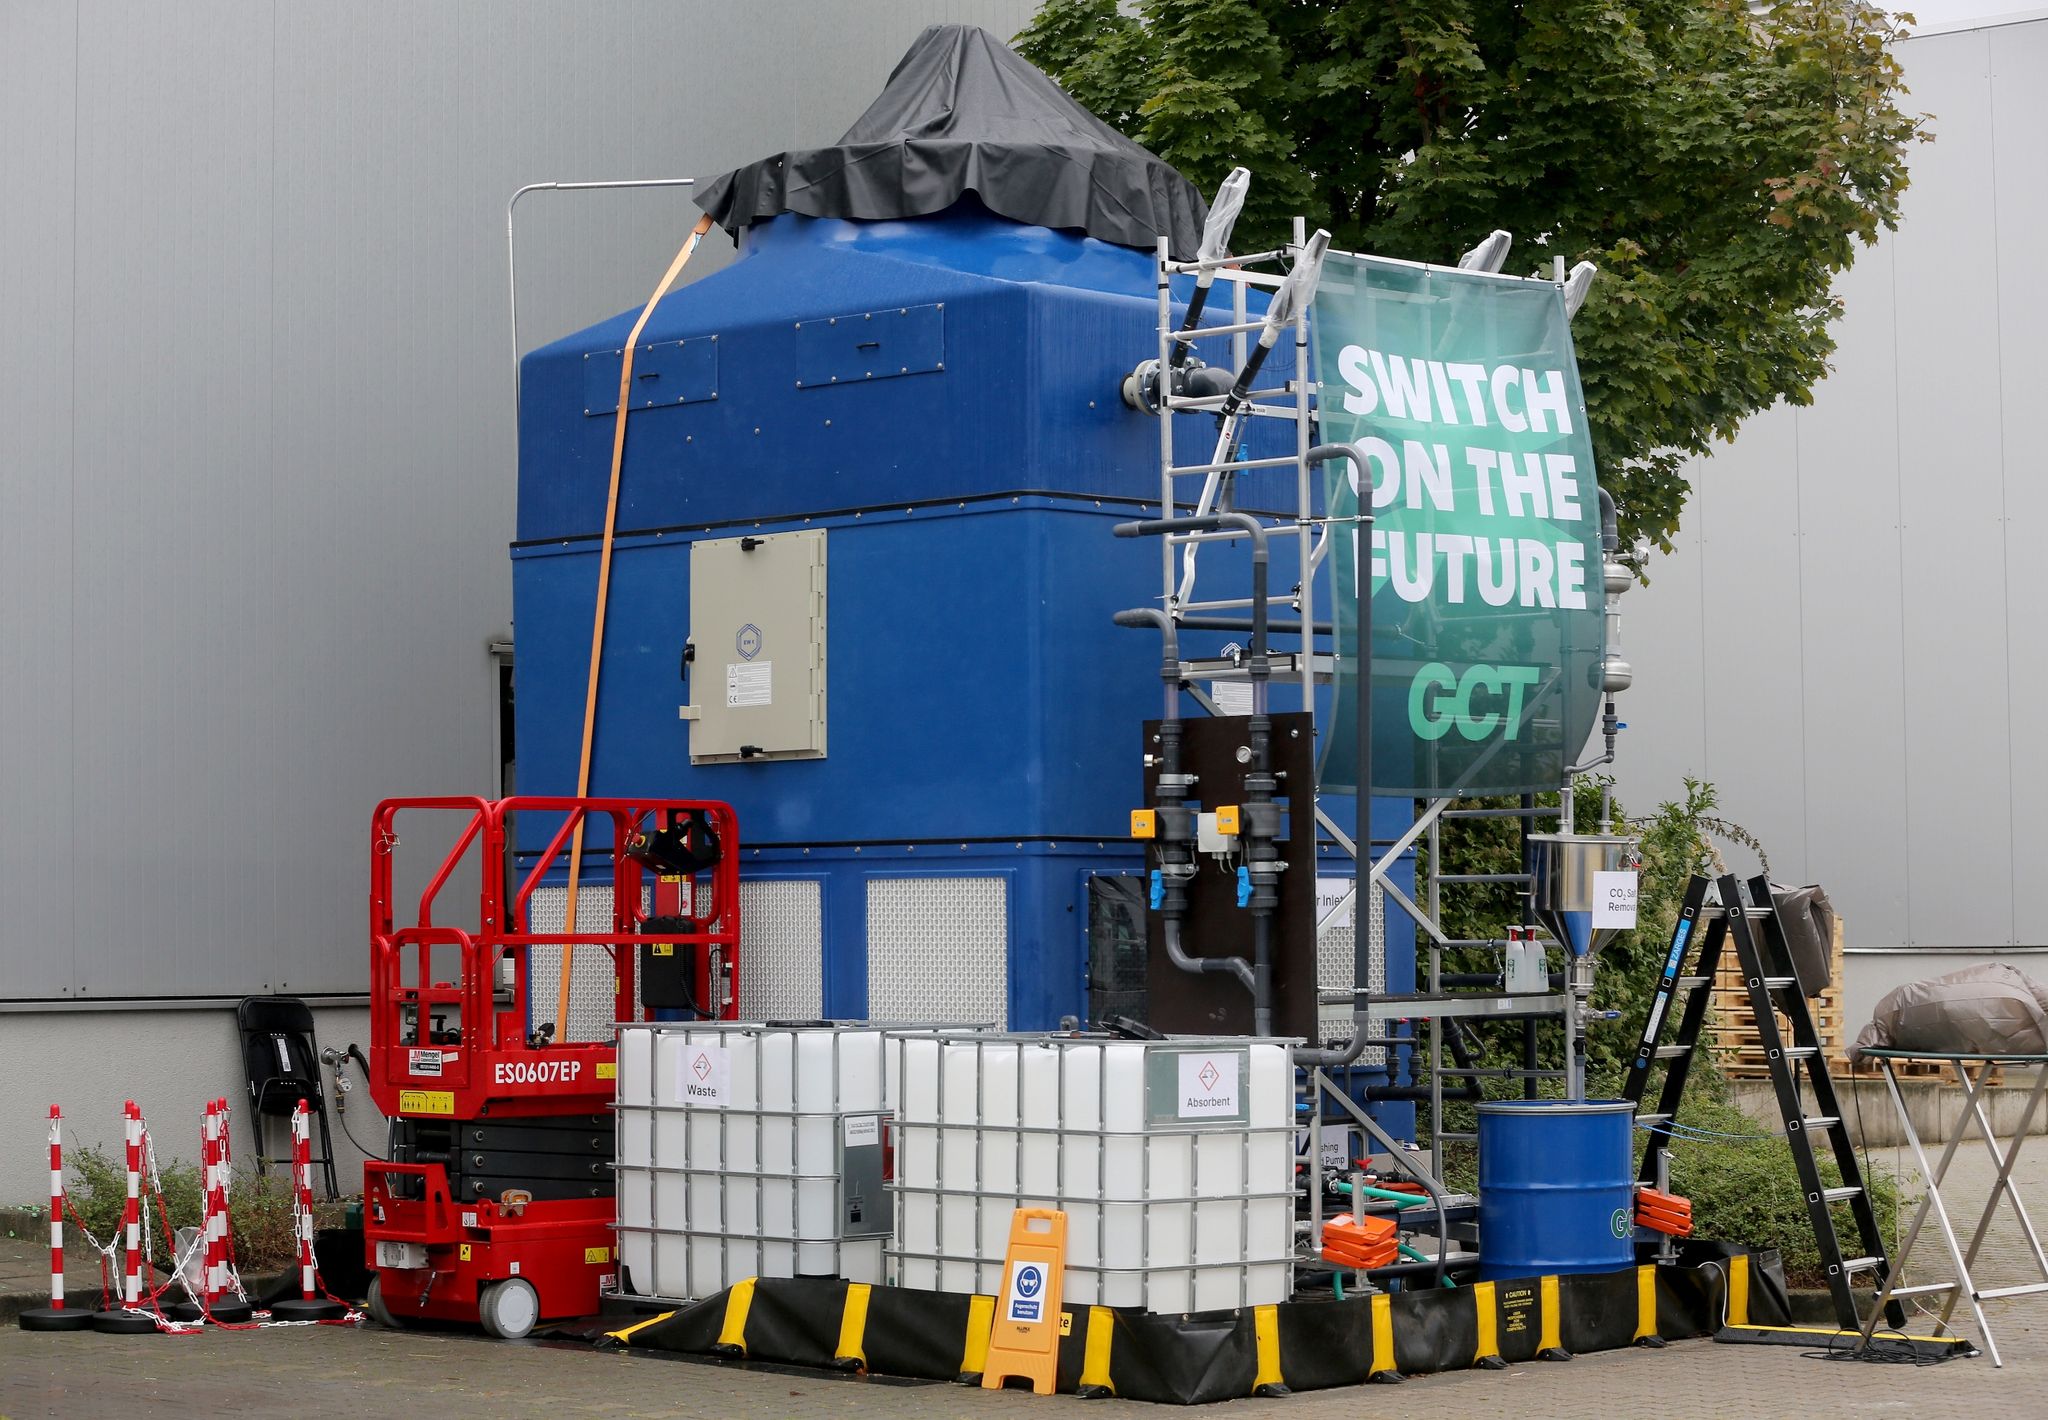 Die sogenannte «Greenberry 2», eine etwa fünf Meter hohe Demonstrationsanlage, mit der das Treibhausgas Kohlendioxid aus der Luft abgeschieden werden kann, eine Art «CO2-Staubsauger».